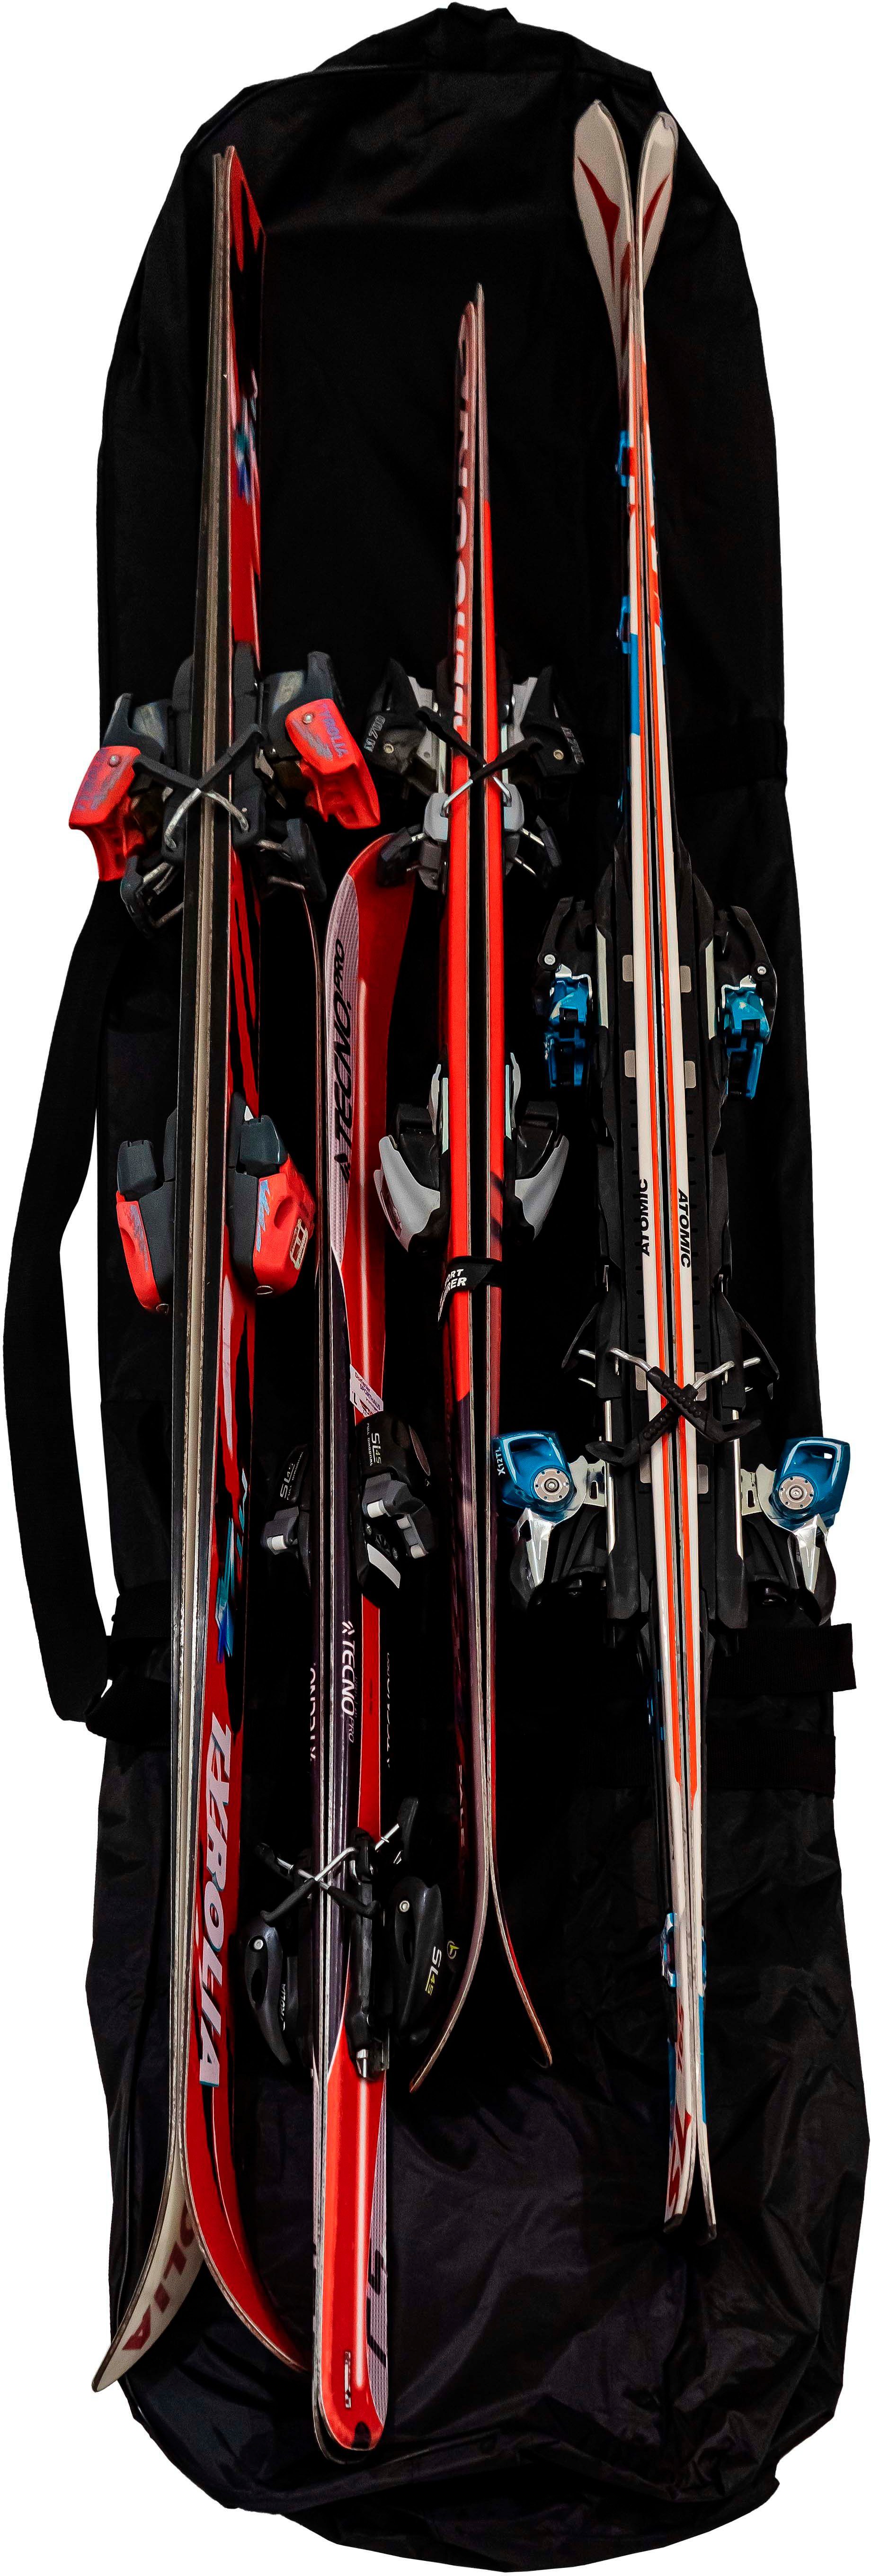 Petex Skitasche Skisack, zu 160L passend 4 Paar schwarz Ski, cm, bis Volumen, Aufbewahrungsstasche, ca. 200x20x40